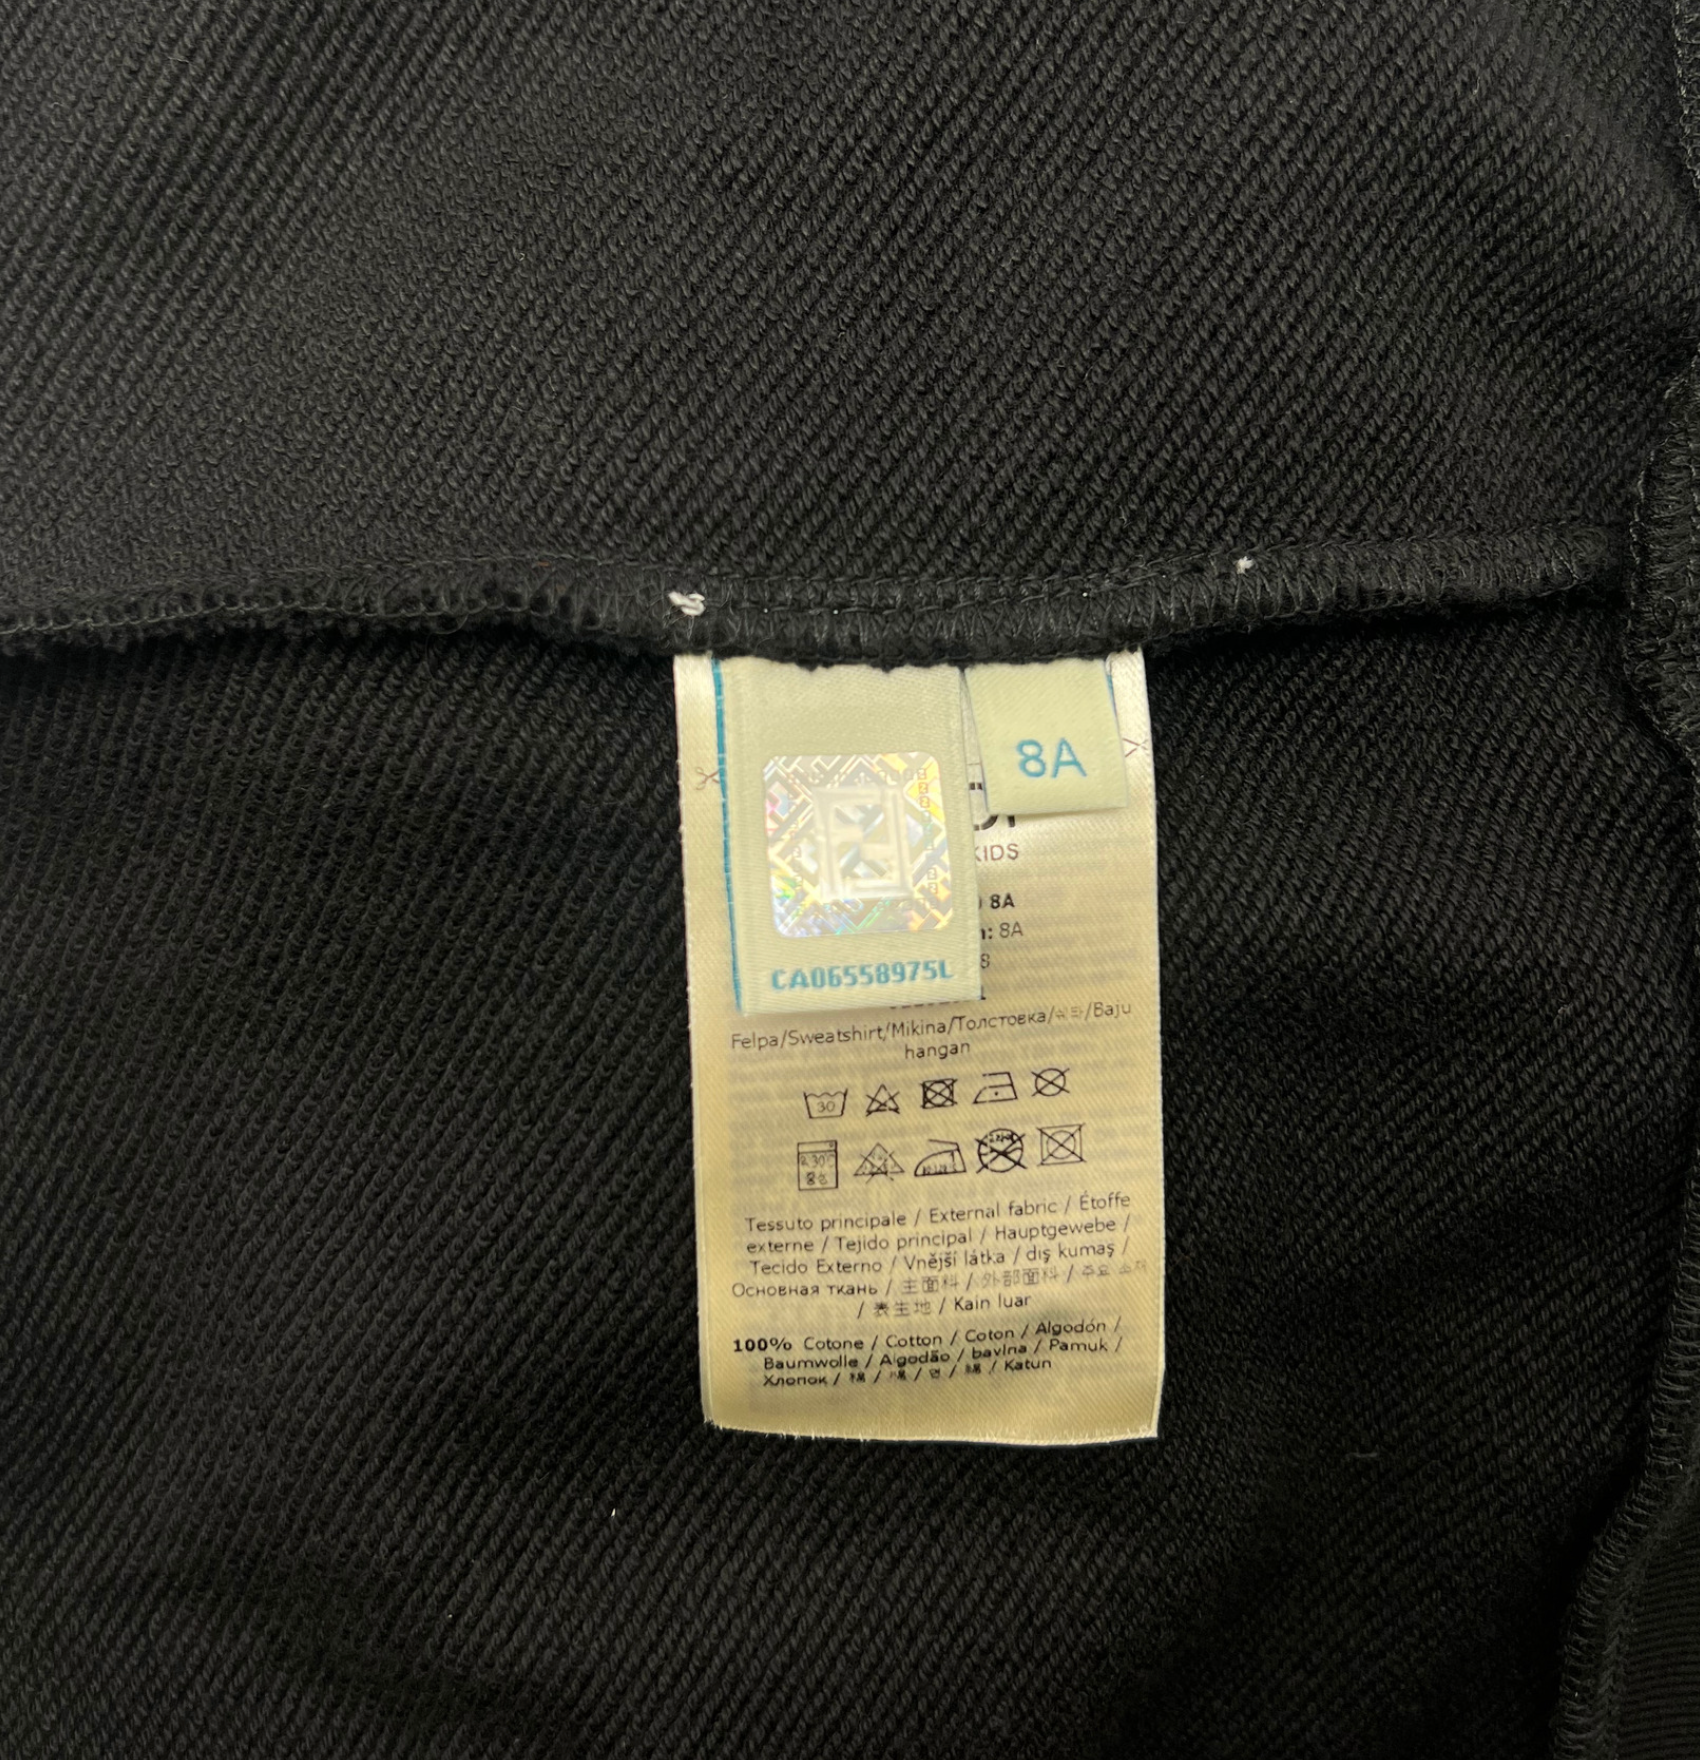 FENDI - Backpack sweatshirt - 8 years